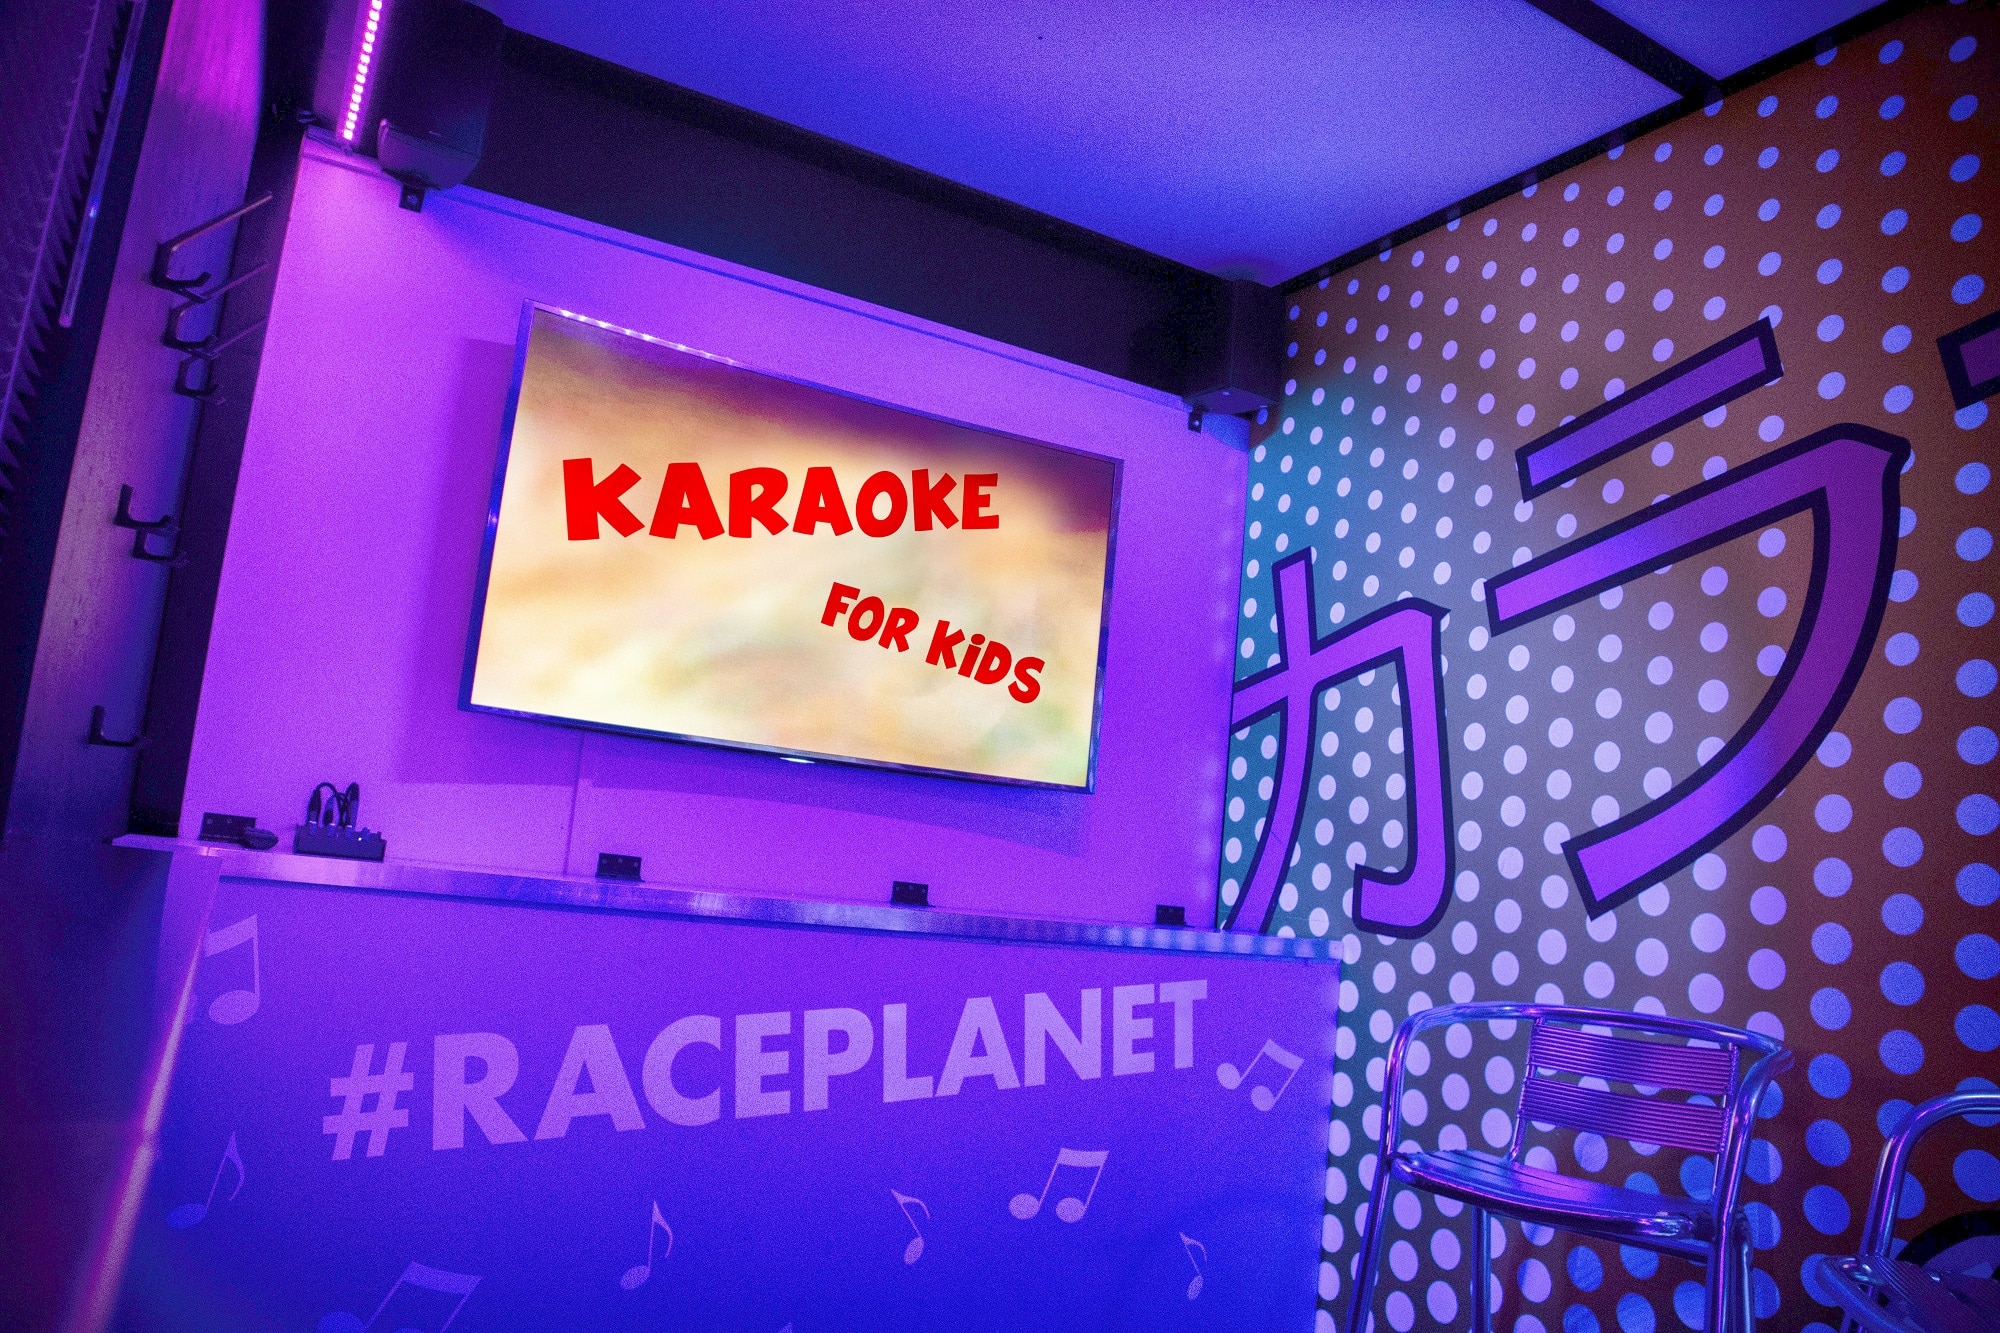 Vier het leukste kinderfeestje bij Race Planet met Karaoke voor kids, zo zingen kinderen mee met hun favoriete liedjes.